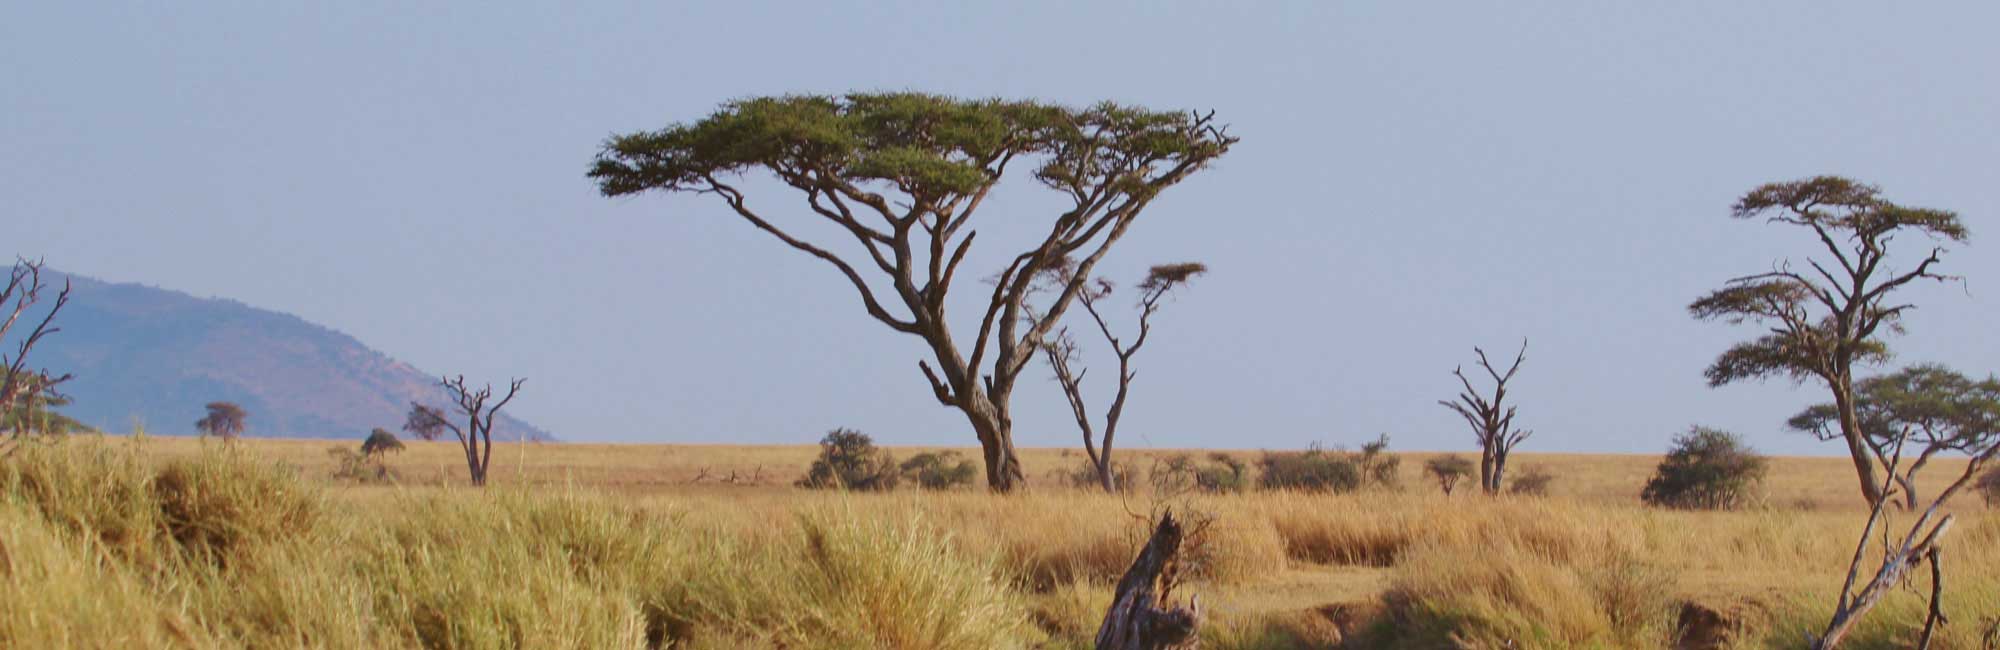 坦桑尼亚